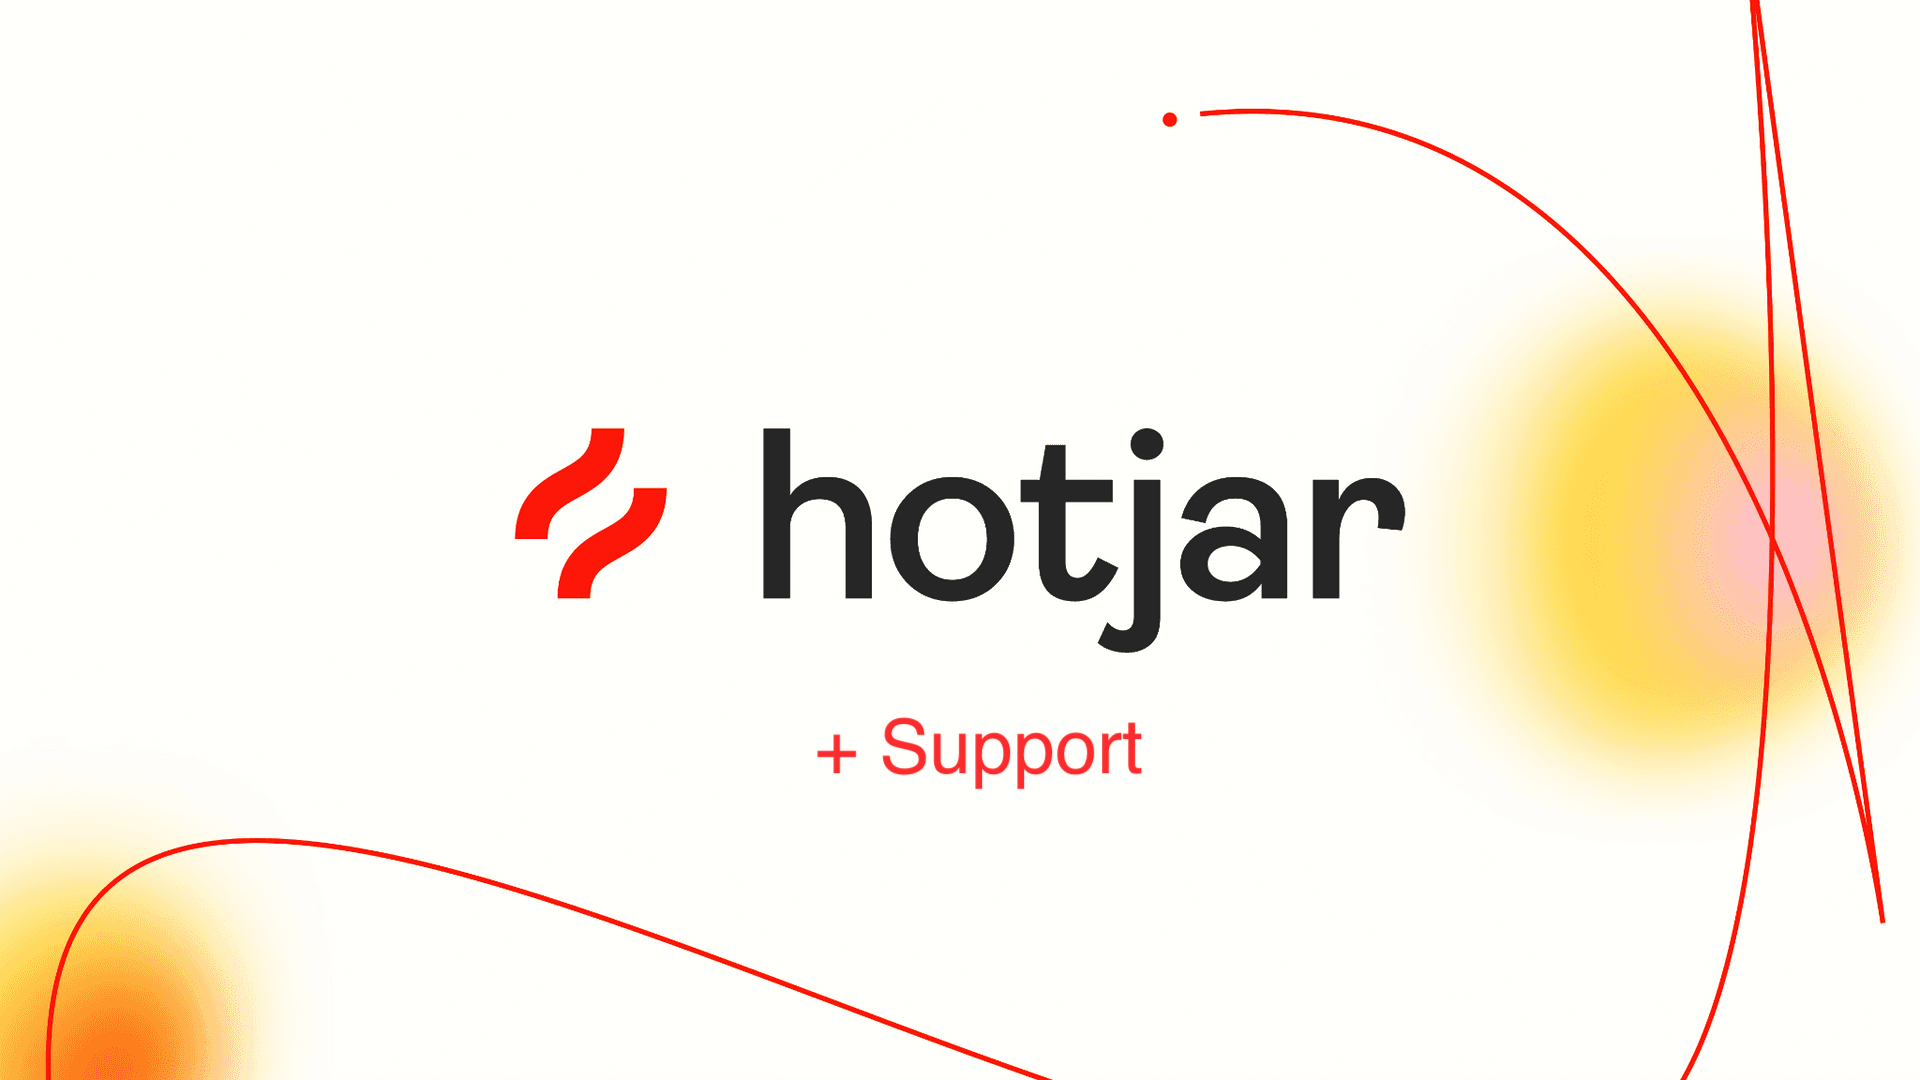 Hotjar + Support